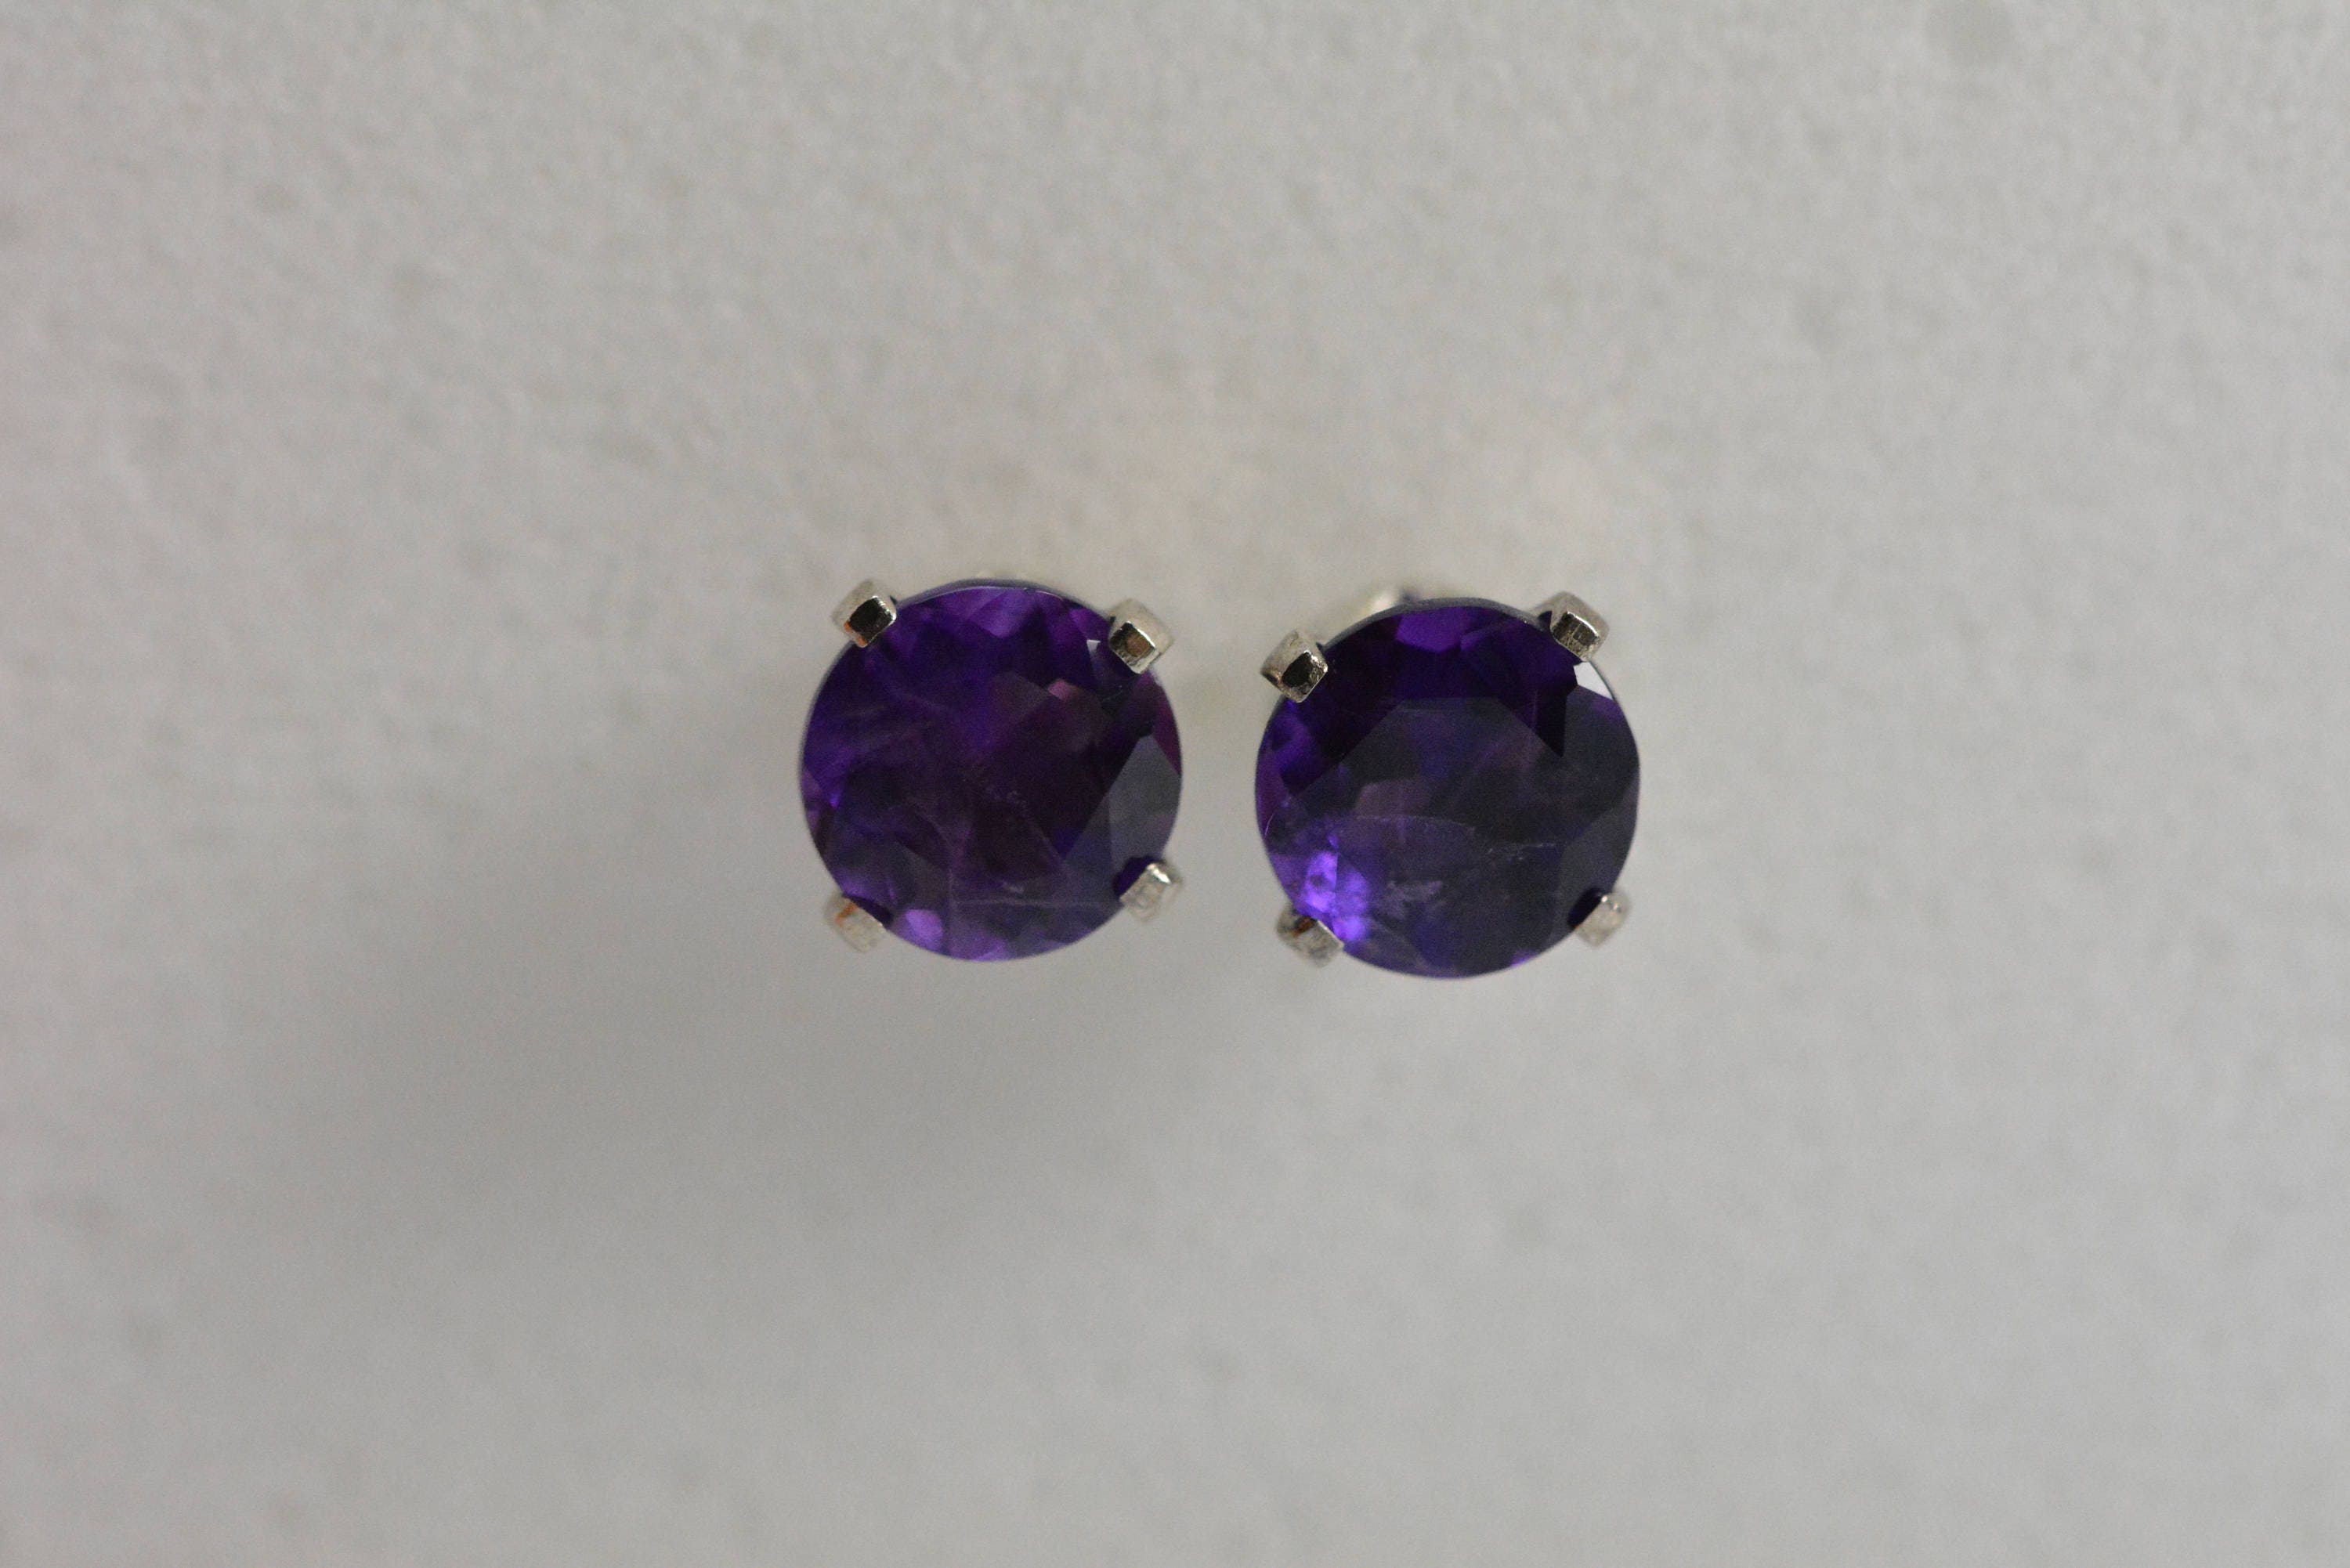 Amethyst earrings stud 6mm3mm silver purple | Etsy